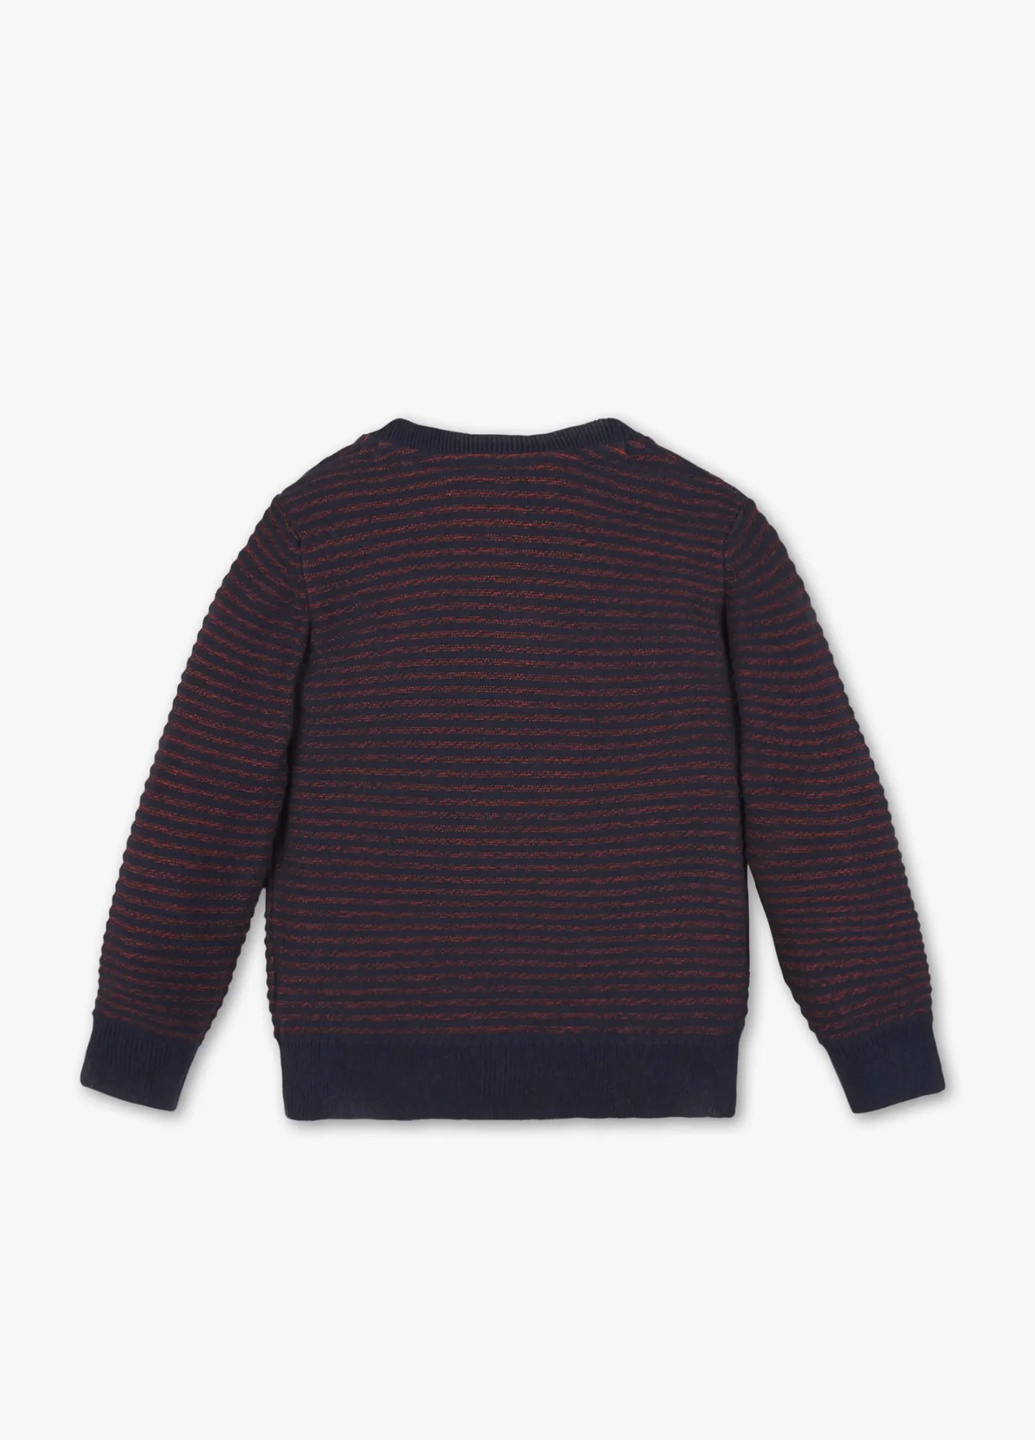 Комбинированный демисезонный детский свитер на мальчика пуловер C&A